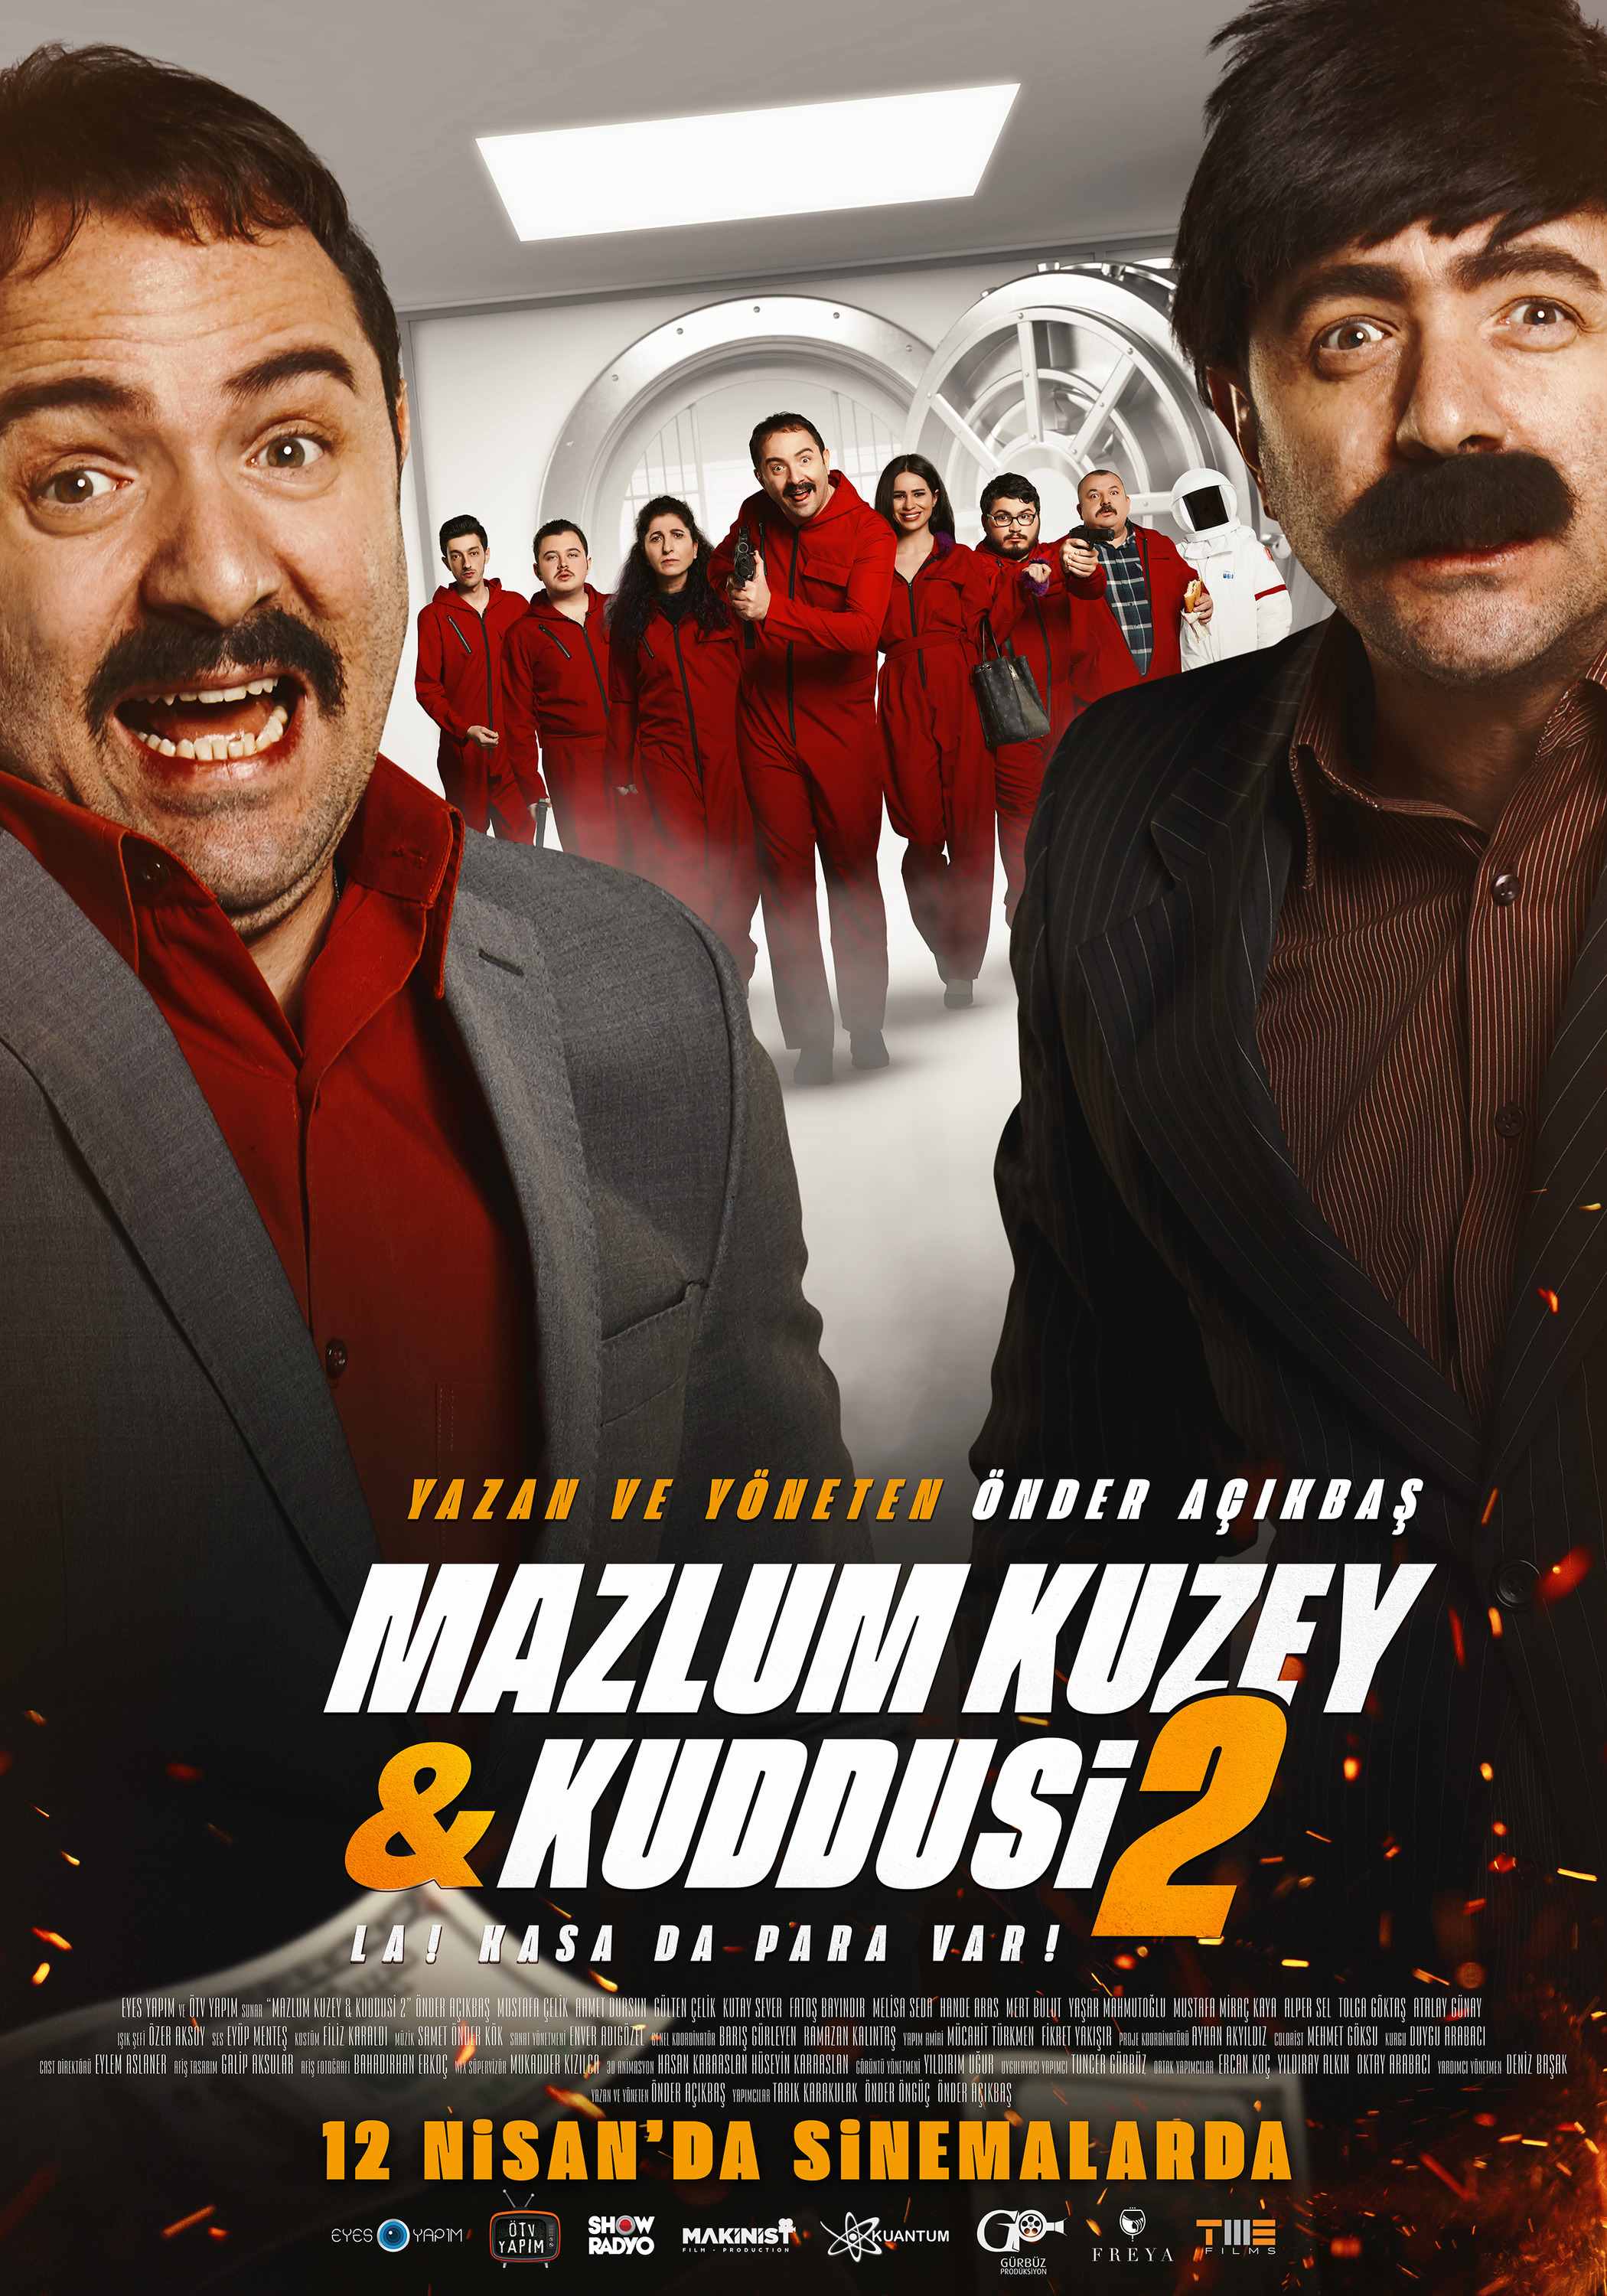 Mega Sized Movie Poster Image for Mazlum Kuzey & Kuddusi 2 La! Kasada Para Var! (#2 of 3)